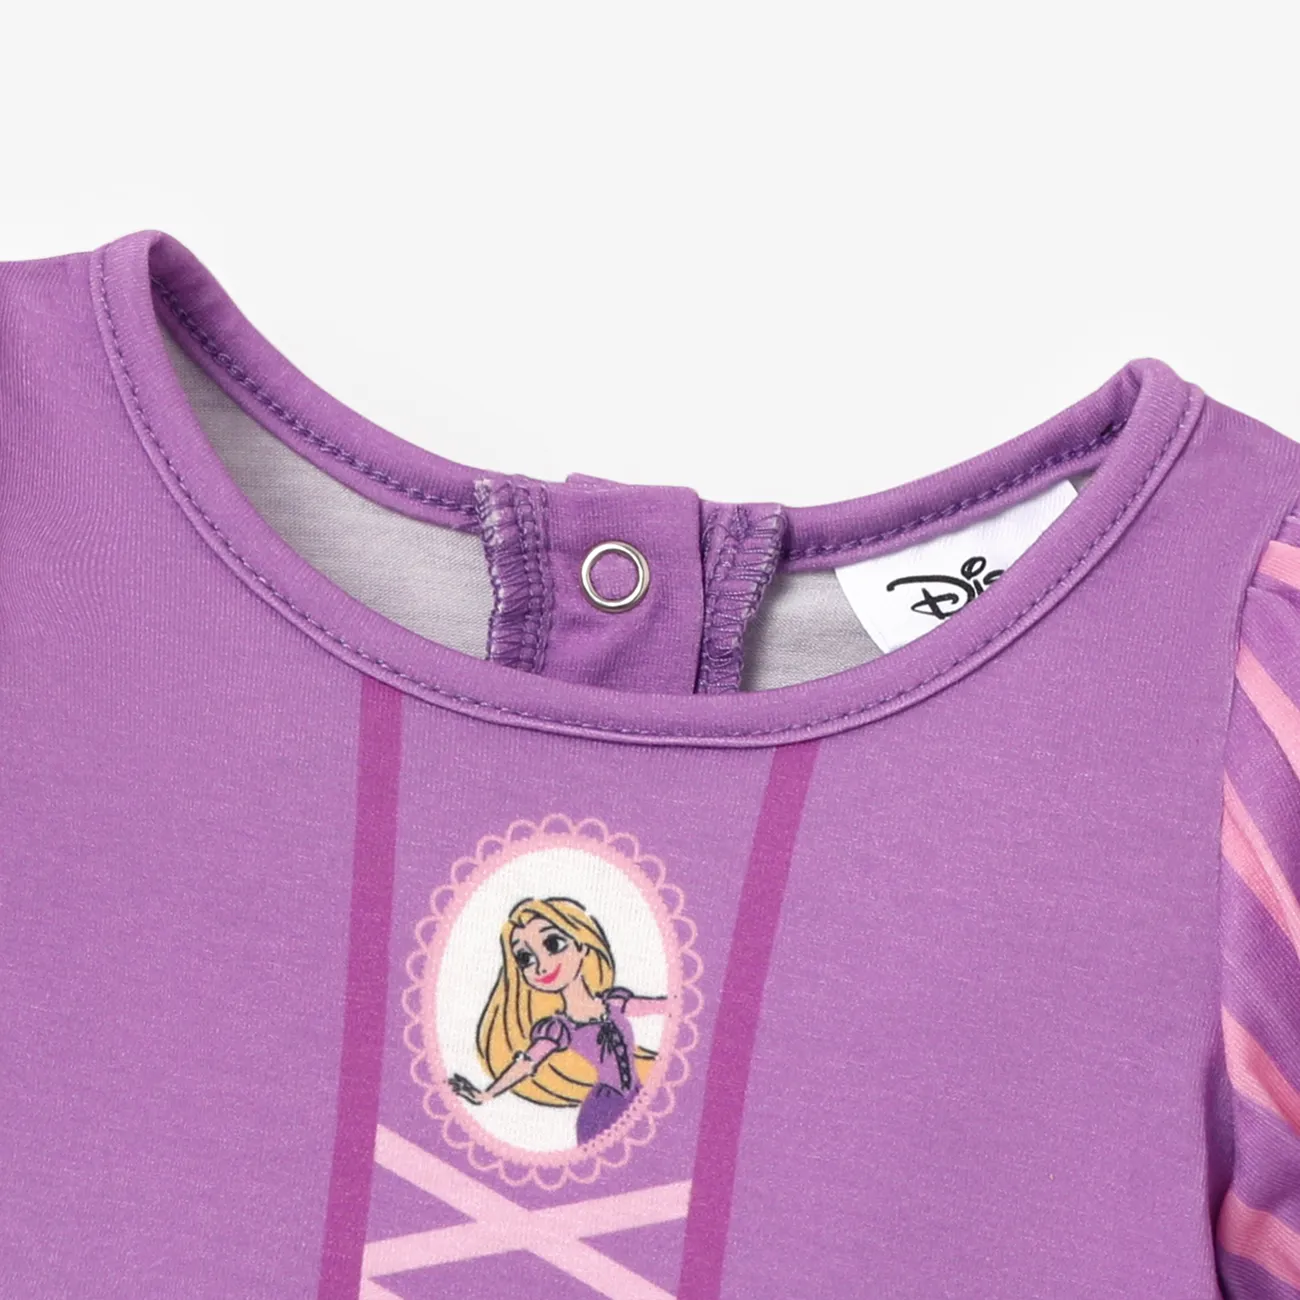 Disney Princess Baby/Toddler Girl Naia™ Character Print Cosplay Long-sleeve Dress Purple big image 1